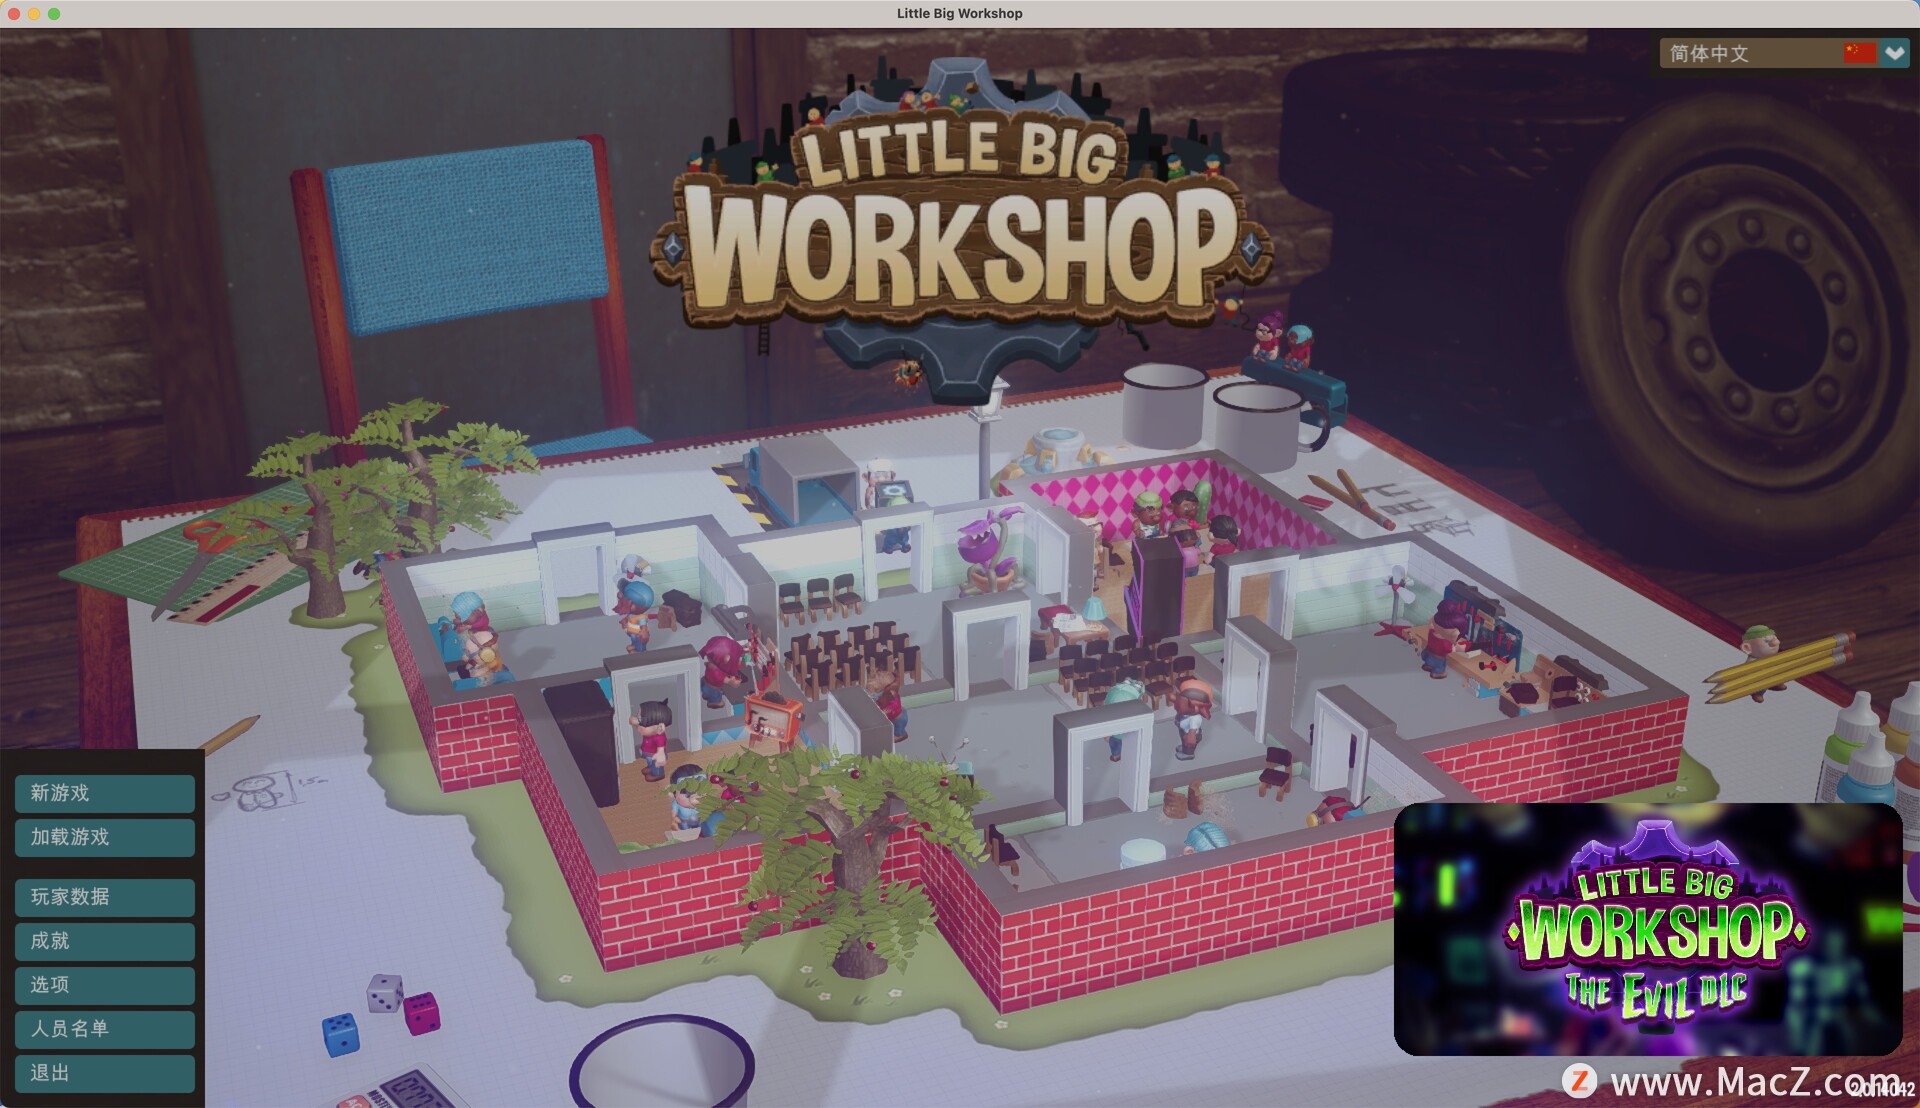  小小大工坊Little Big Workshop for Mac(3D趣味模拟休闲游戏) 